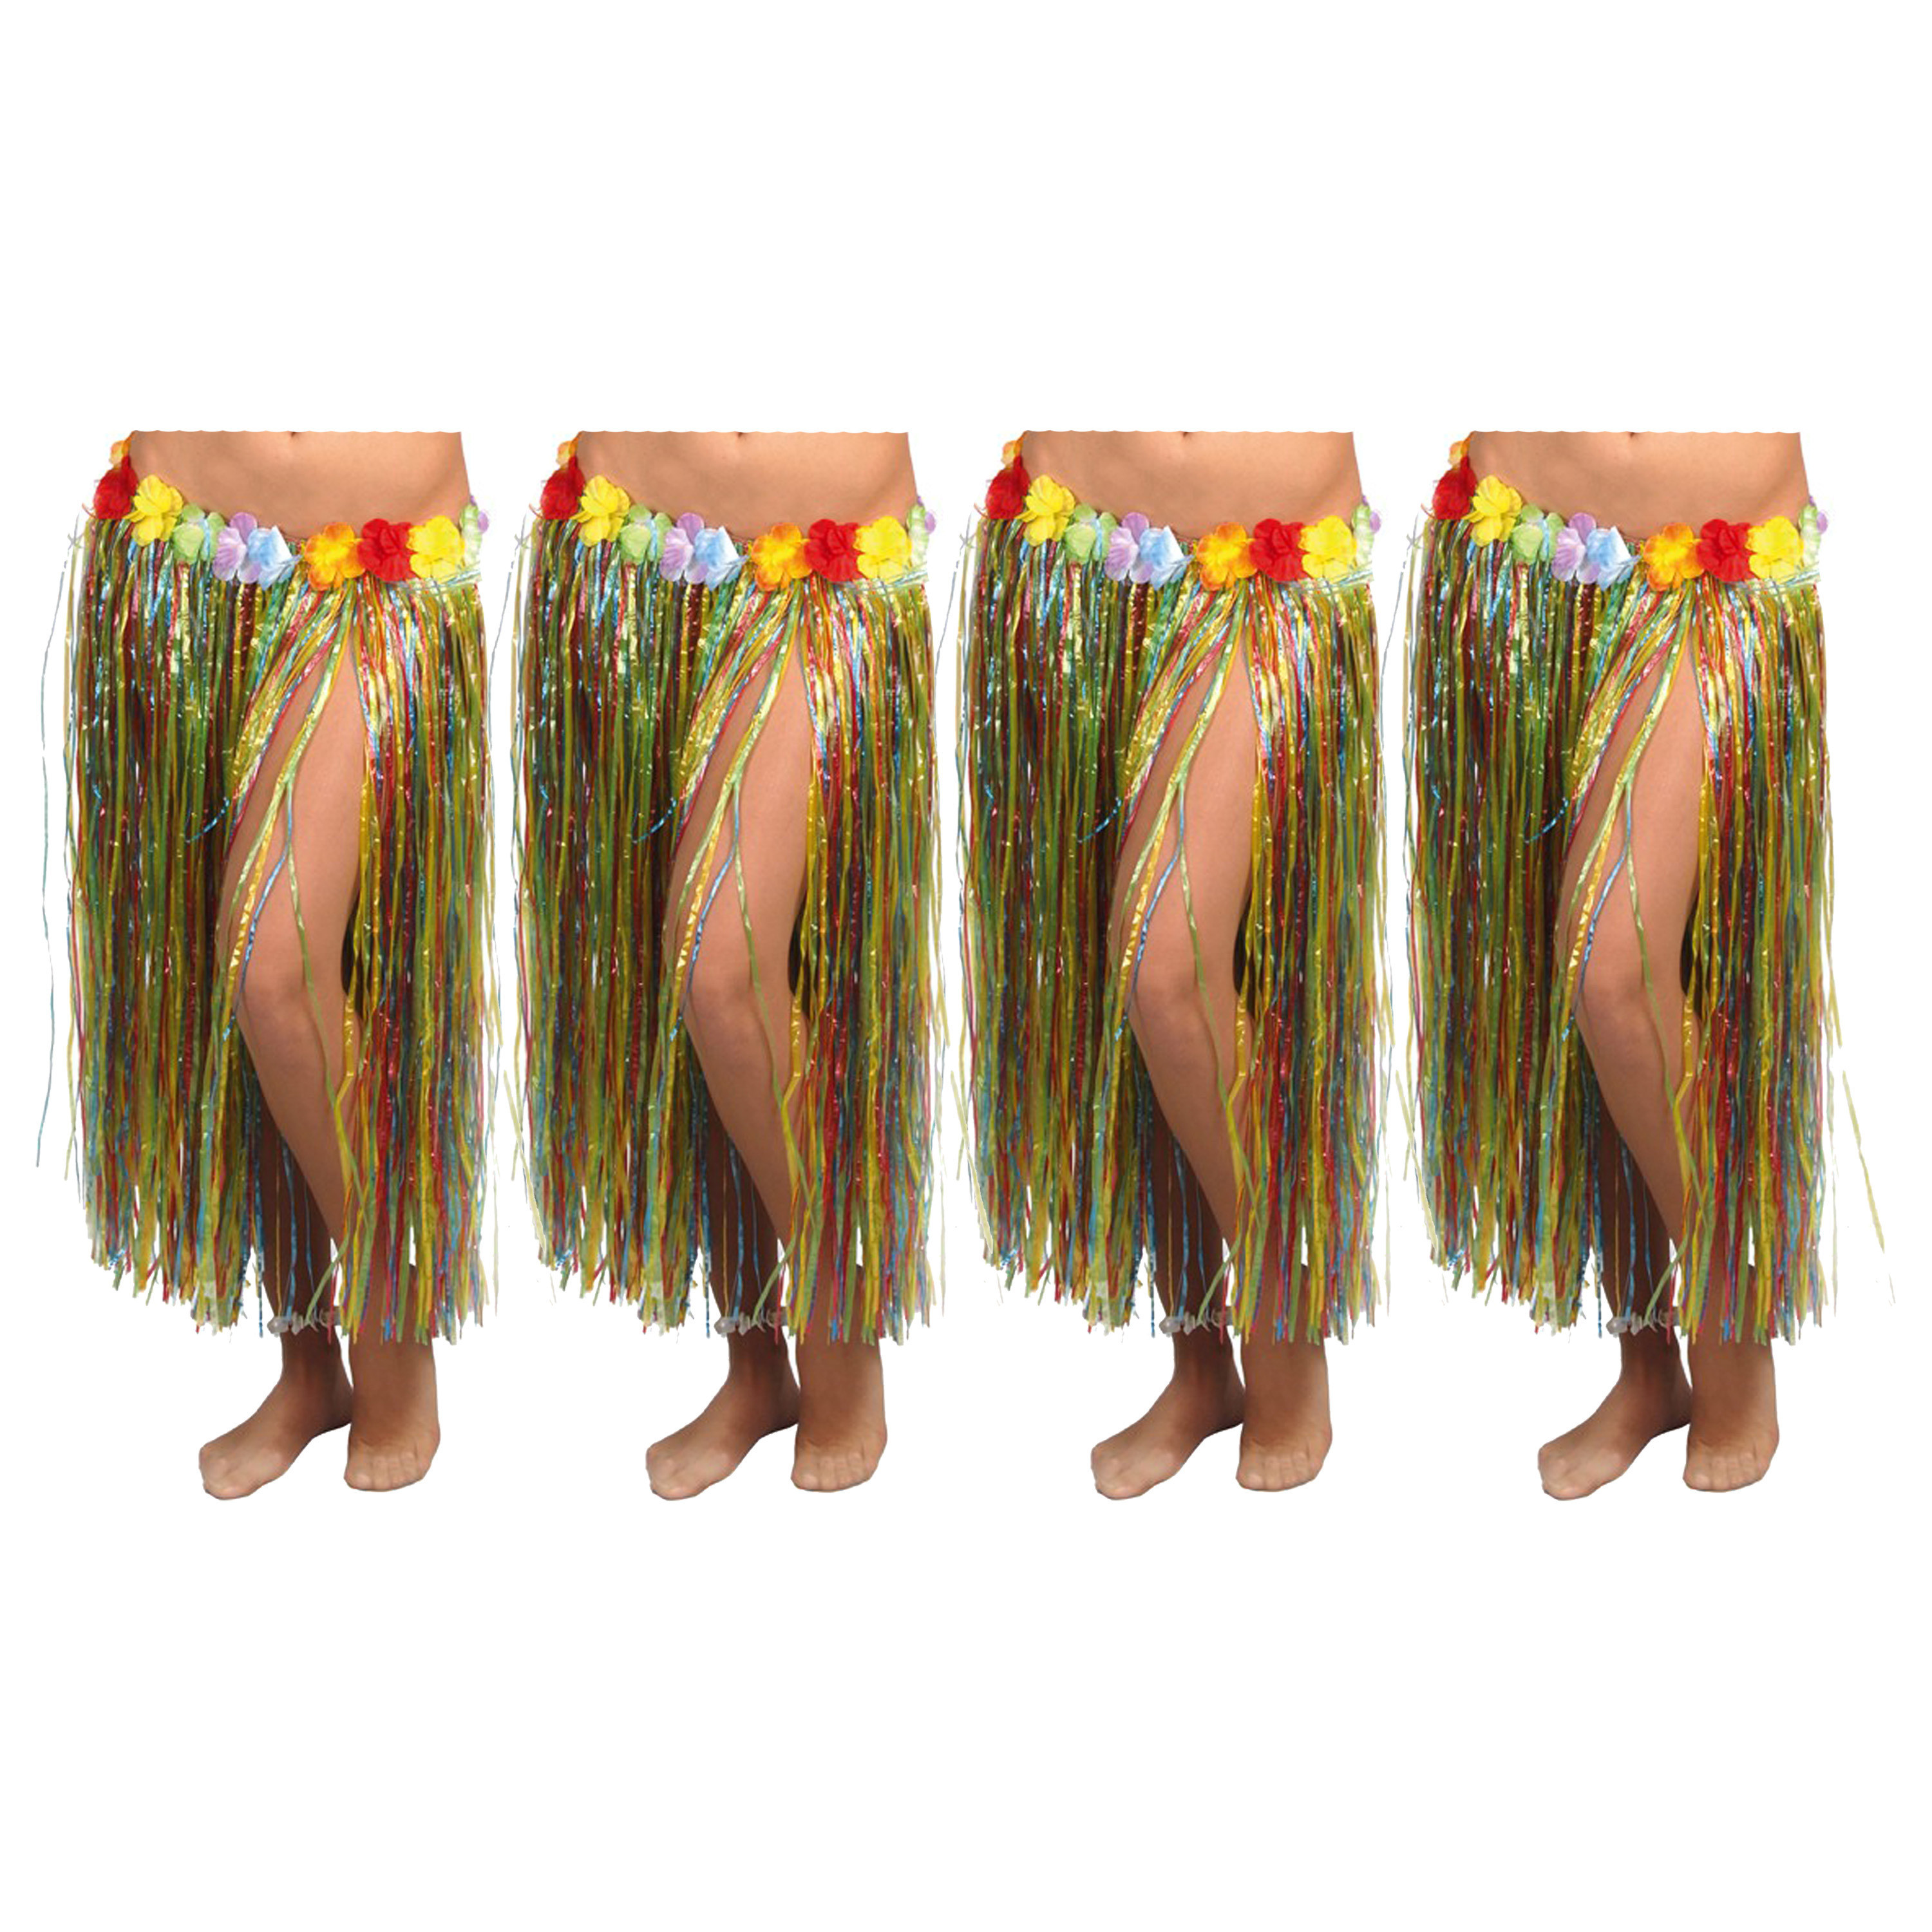 Hawaii verkleed rokje - 4x - voor volwassenen - multicolour - 75 cm - rieten hoela rokje - tropisch